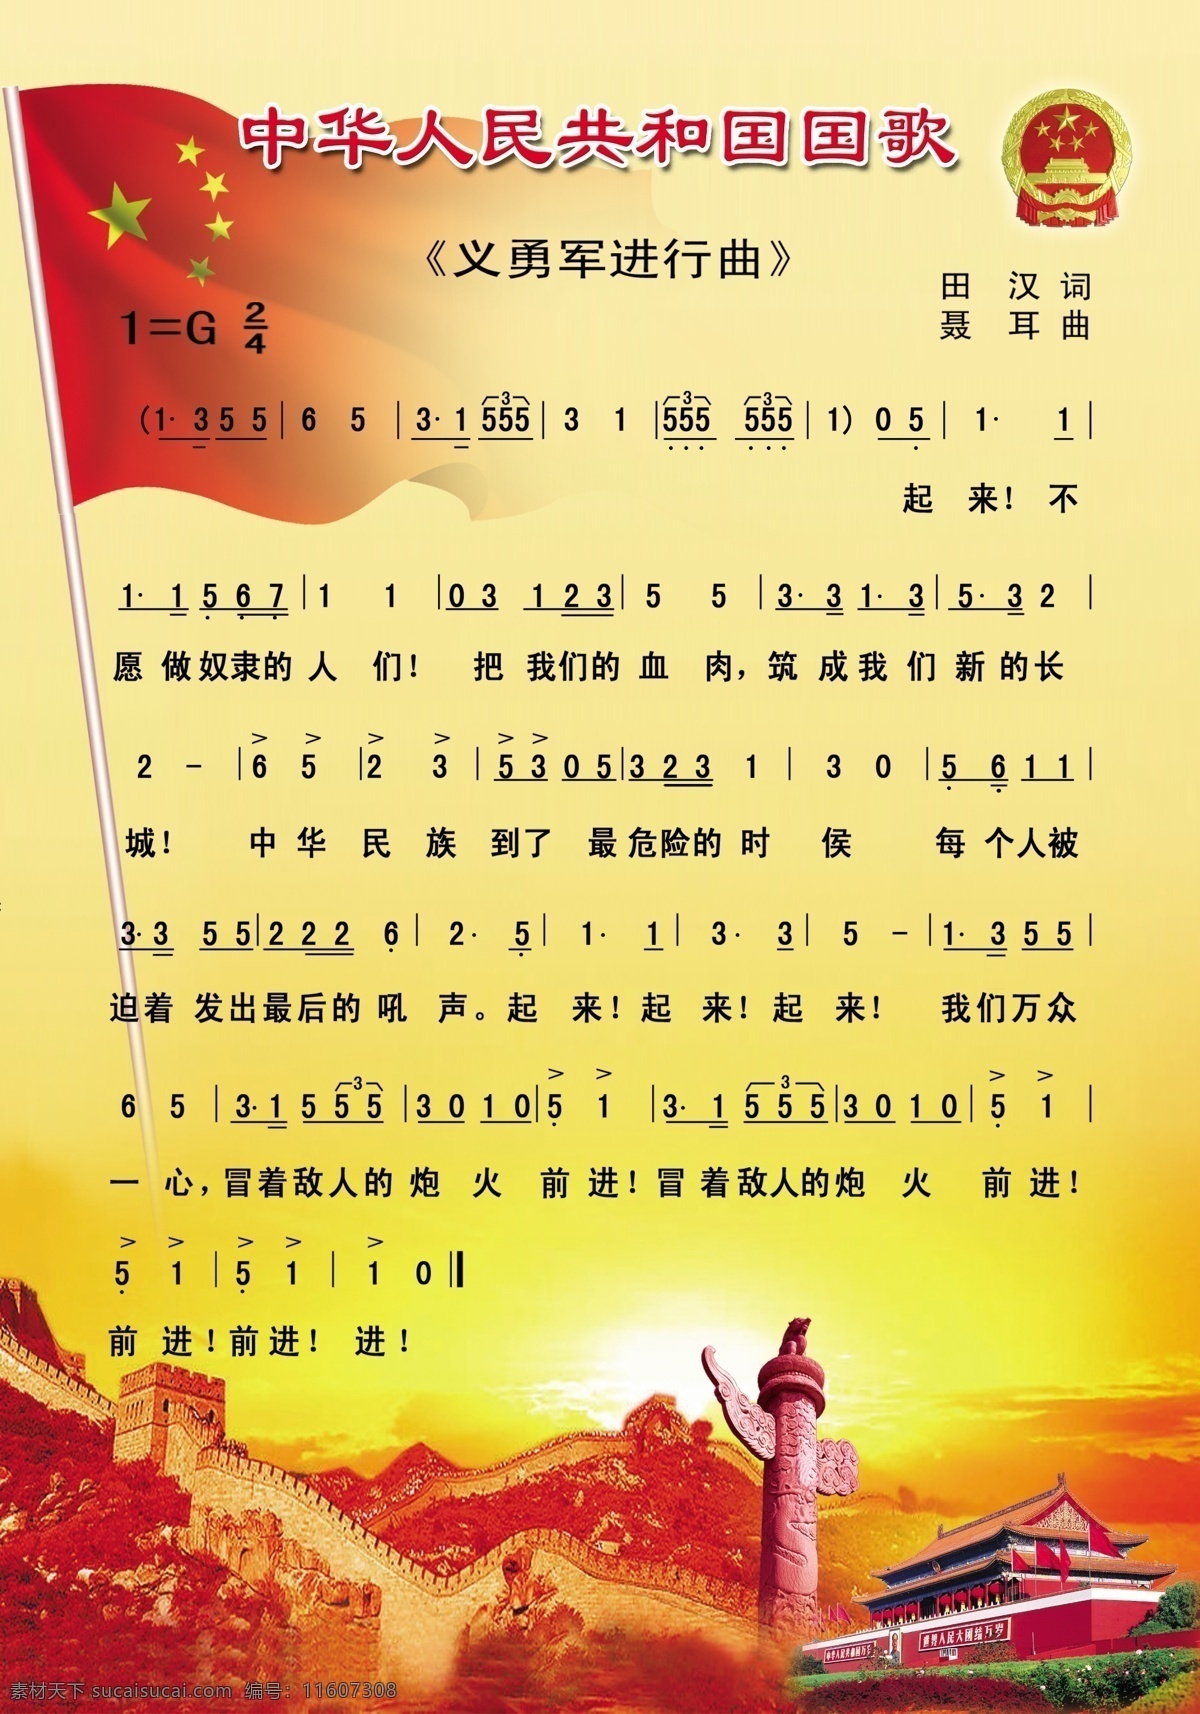 中华人民共和国 国歌 聂耳 田汉 义勇军进行曲 长城 国旗 华表 国徽 展板模板 广告设计模板 源文件